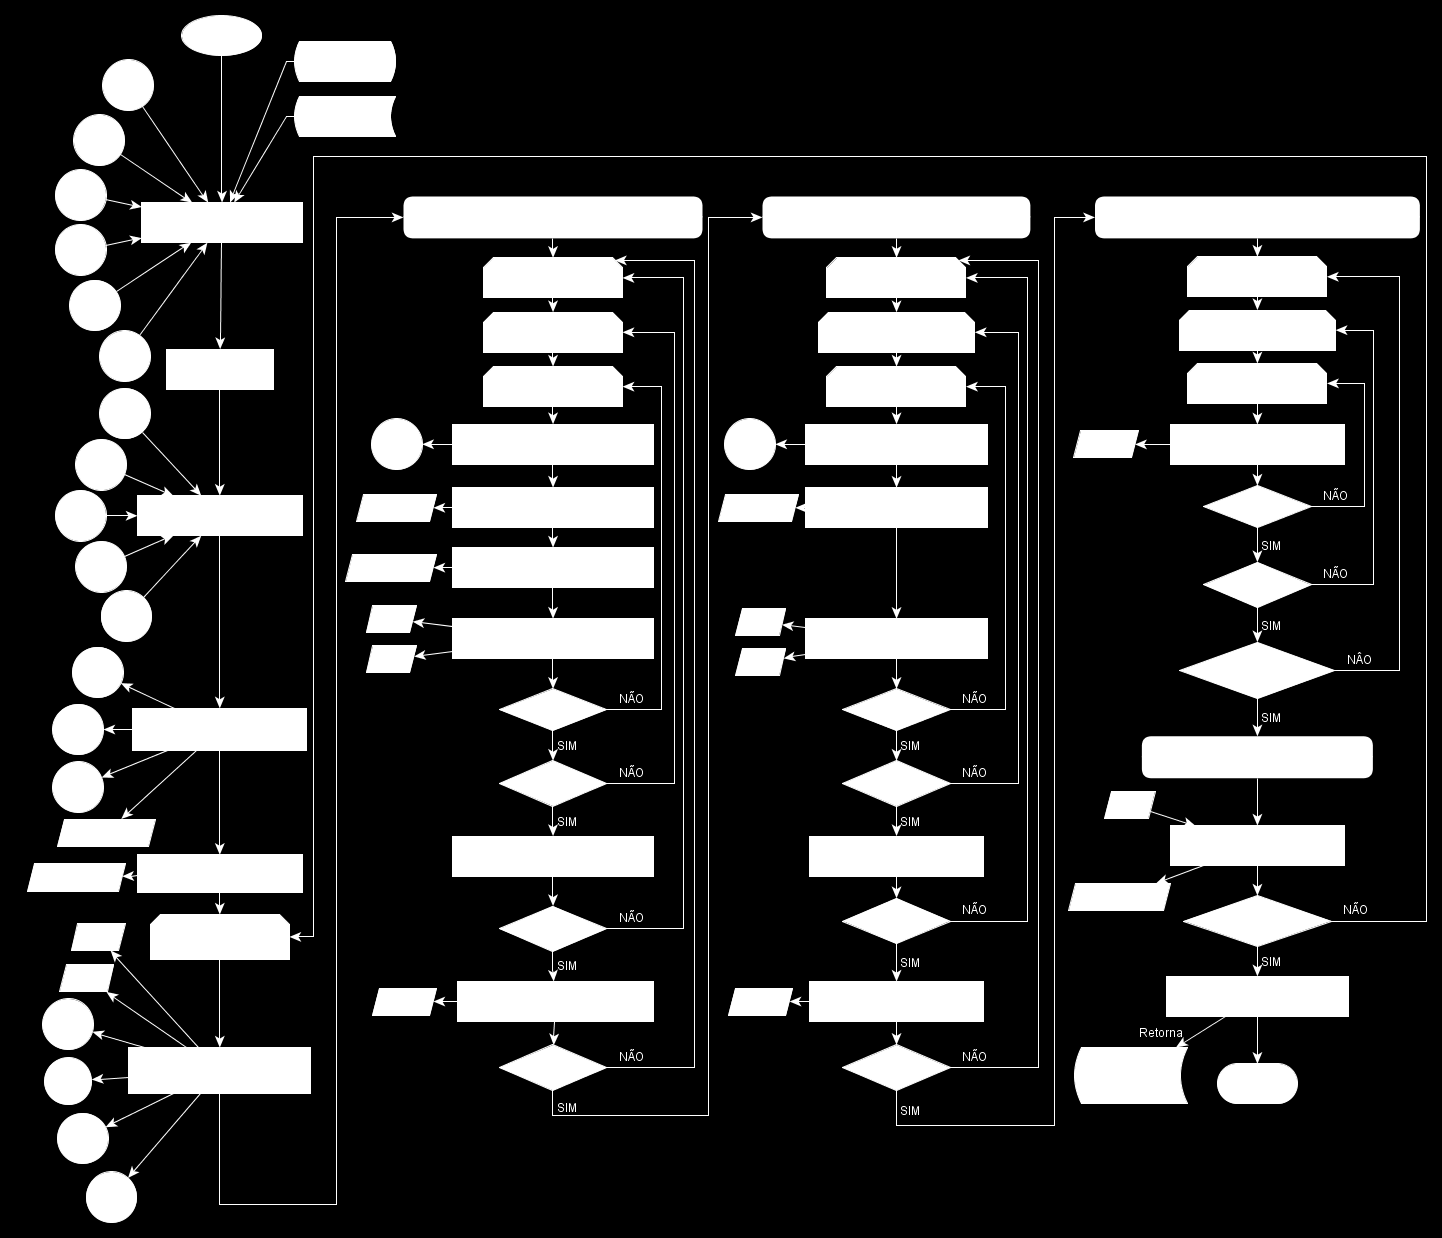 84 CAPÍTULO 4 DESENVOLVIMENTO E baseando-se na Figura 29, a Figura 30 e a Tabela 1 ilustram com mais detalhes a descrição do algoritmo serial implementado neste trabalho.